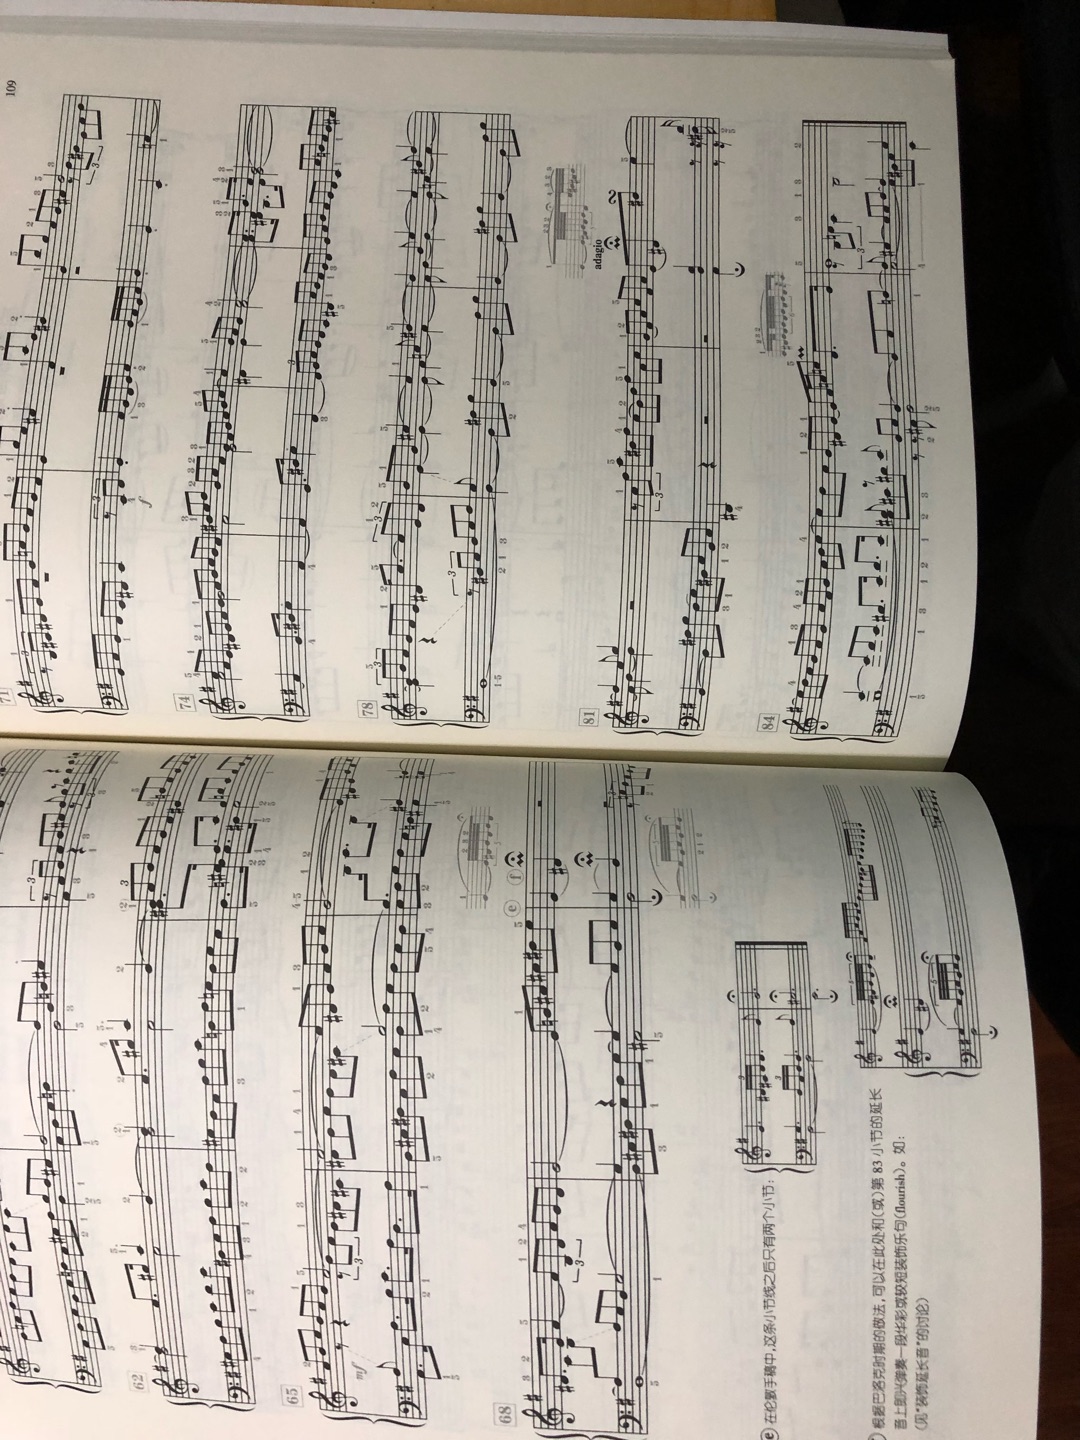 巴赫的平均律钢琴曲集，这个版本很棒！详细的给出咯很多地方的演奏参考……印刷也很棒！是一本不可多得的好书！